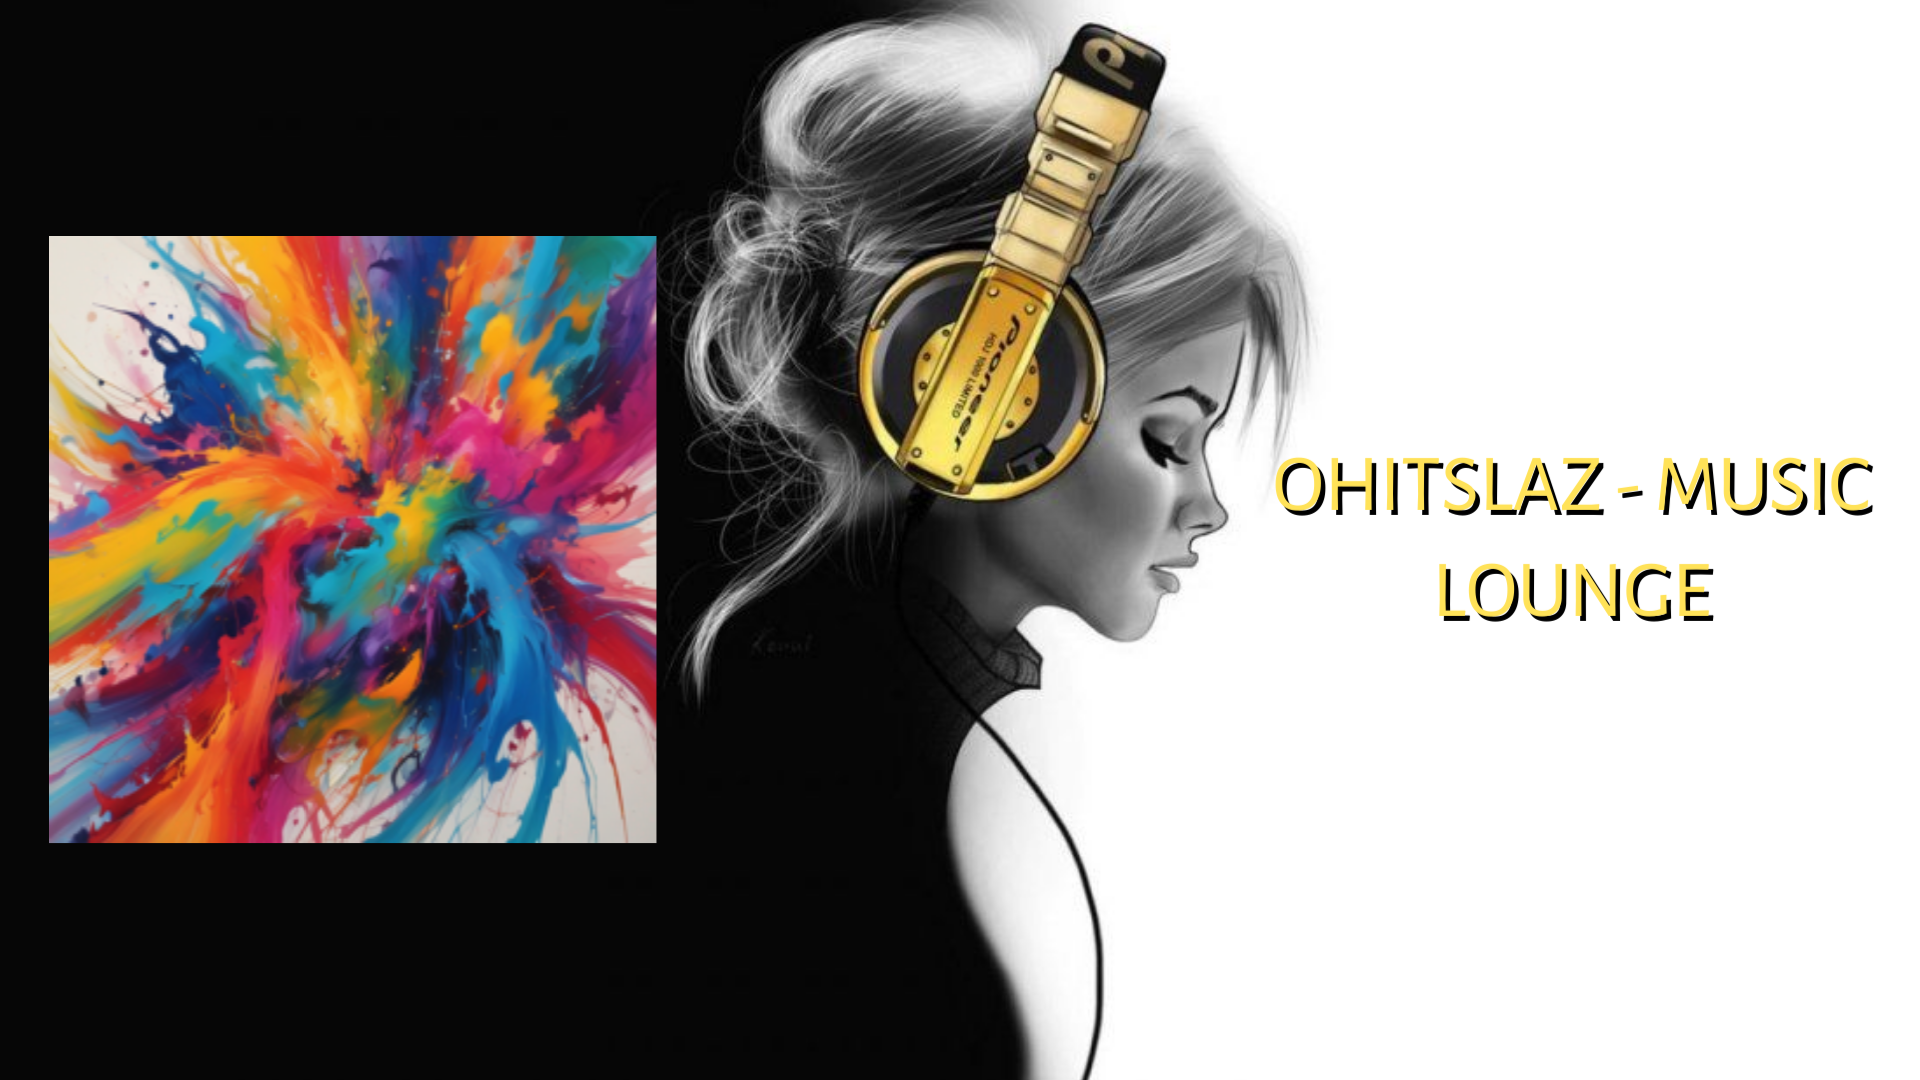 OhItsLaz - Music Lounge